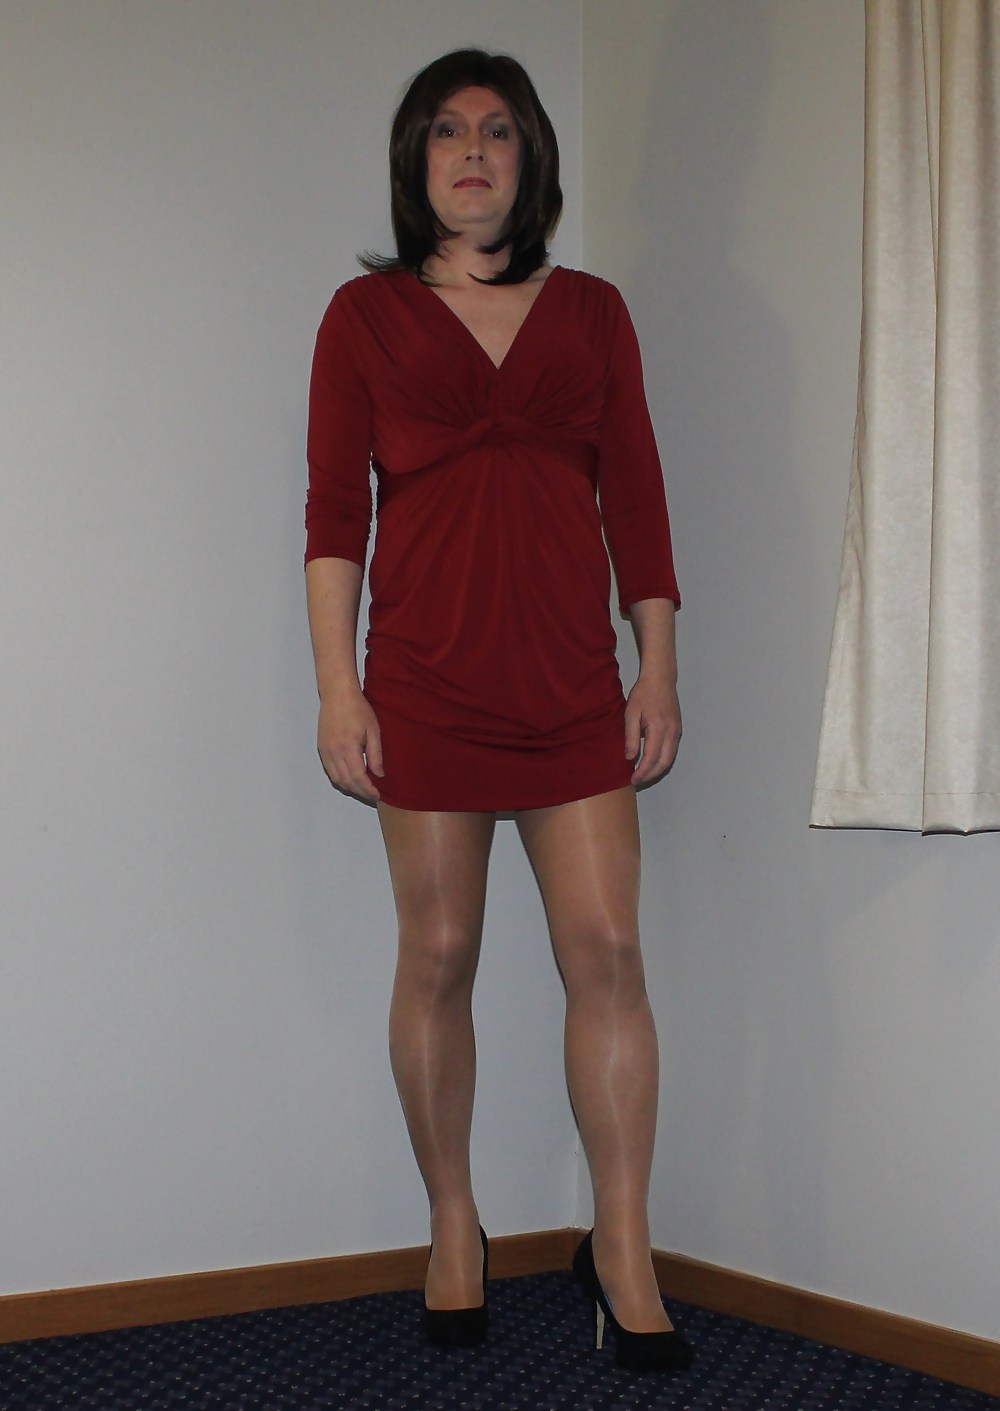 Roten Kleid Und Glänzende Strumpfhosen #17247974